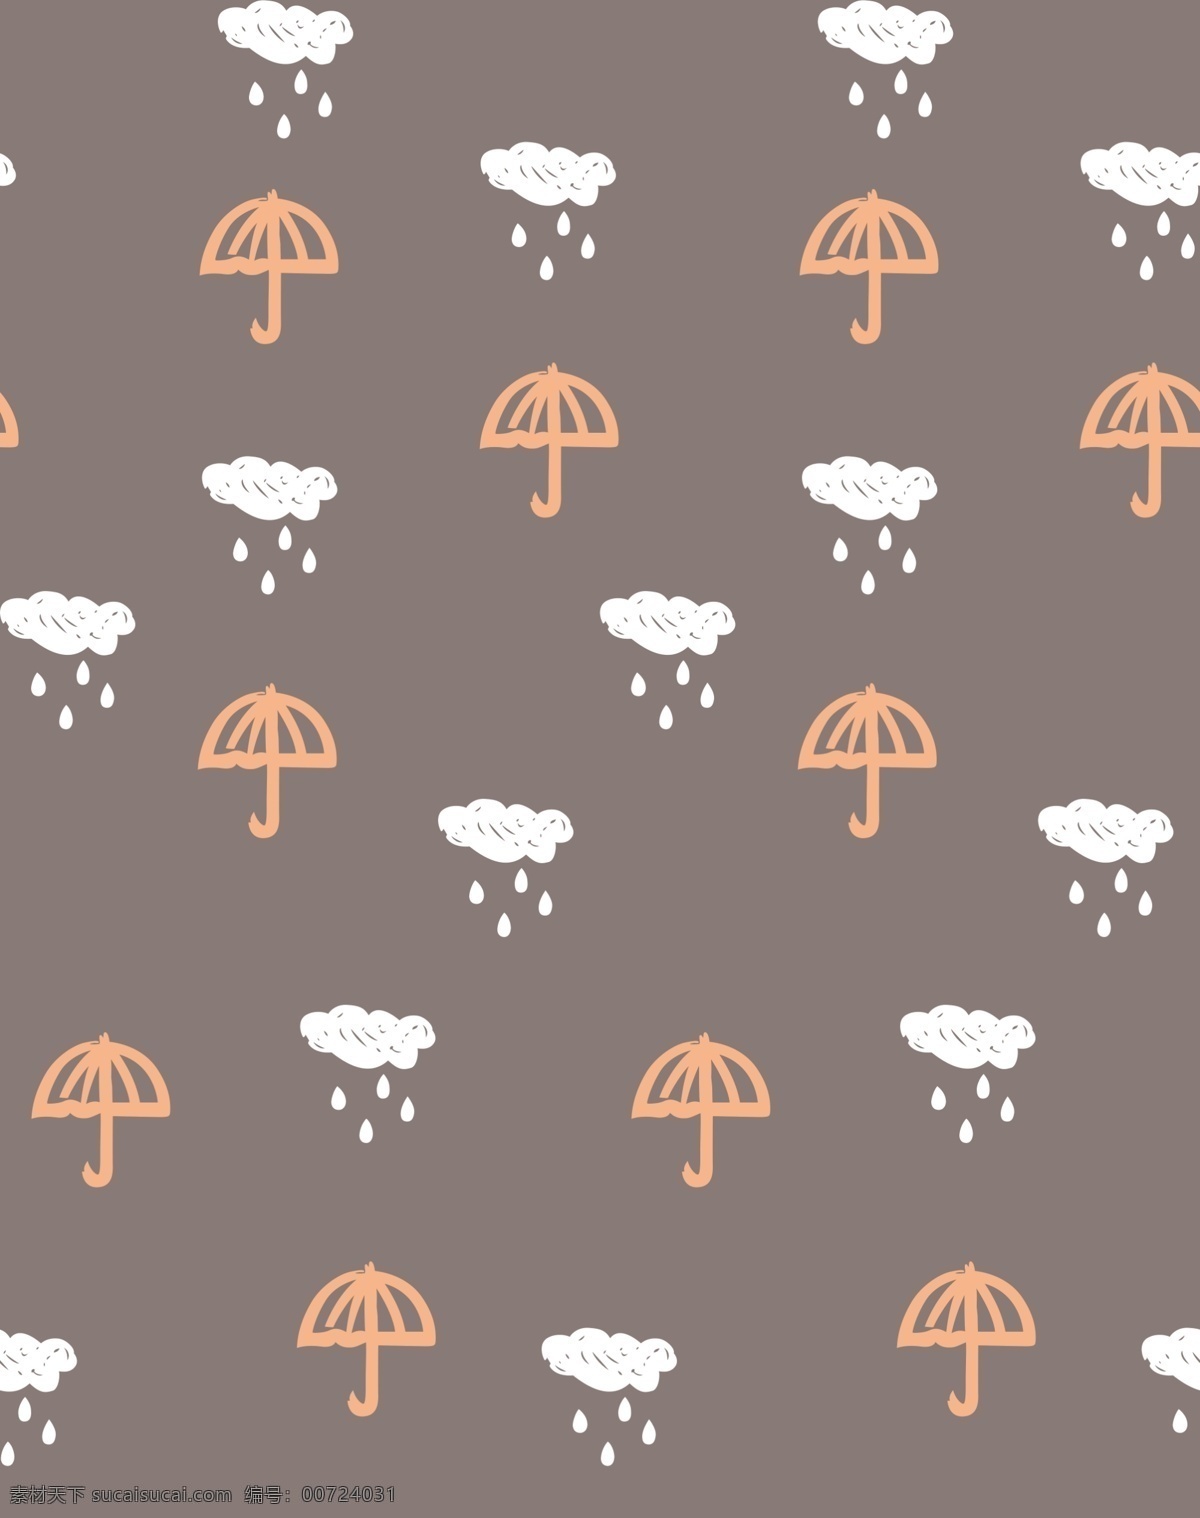 卡通雨伞图片 卡通 雨伞 云朵 雨滴 可爱 分层